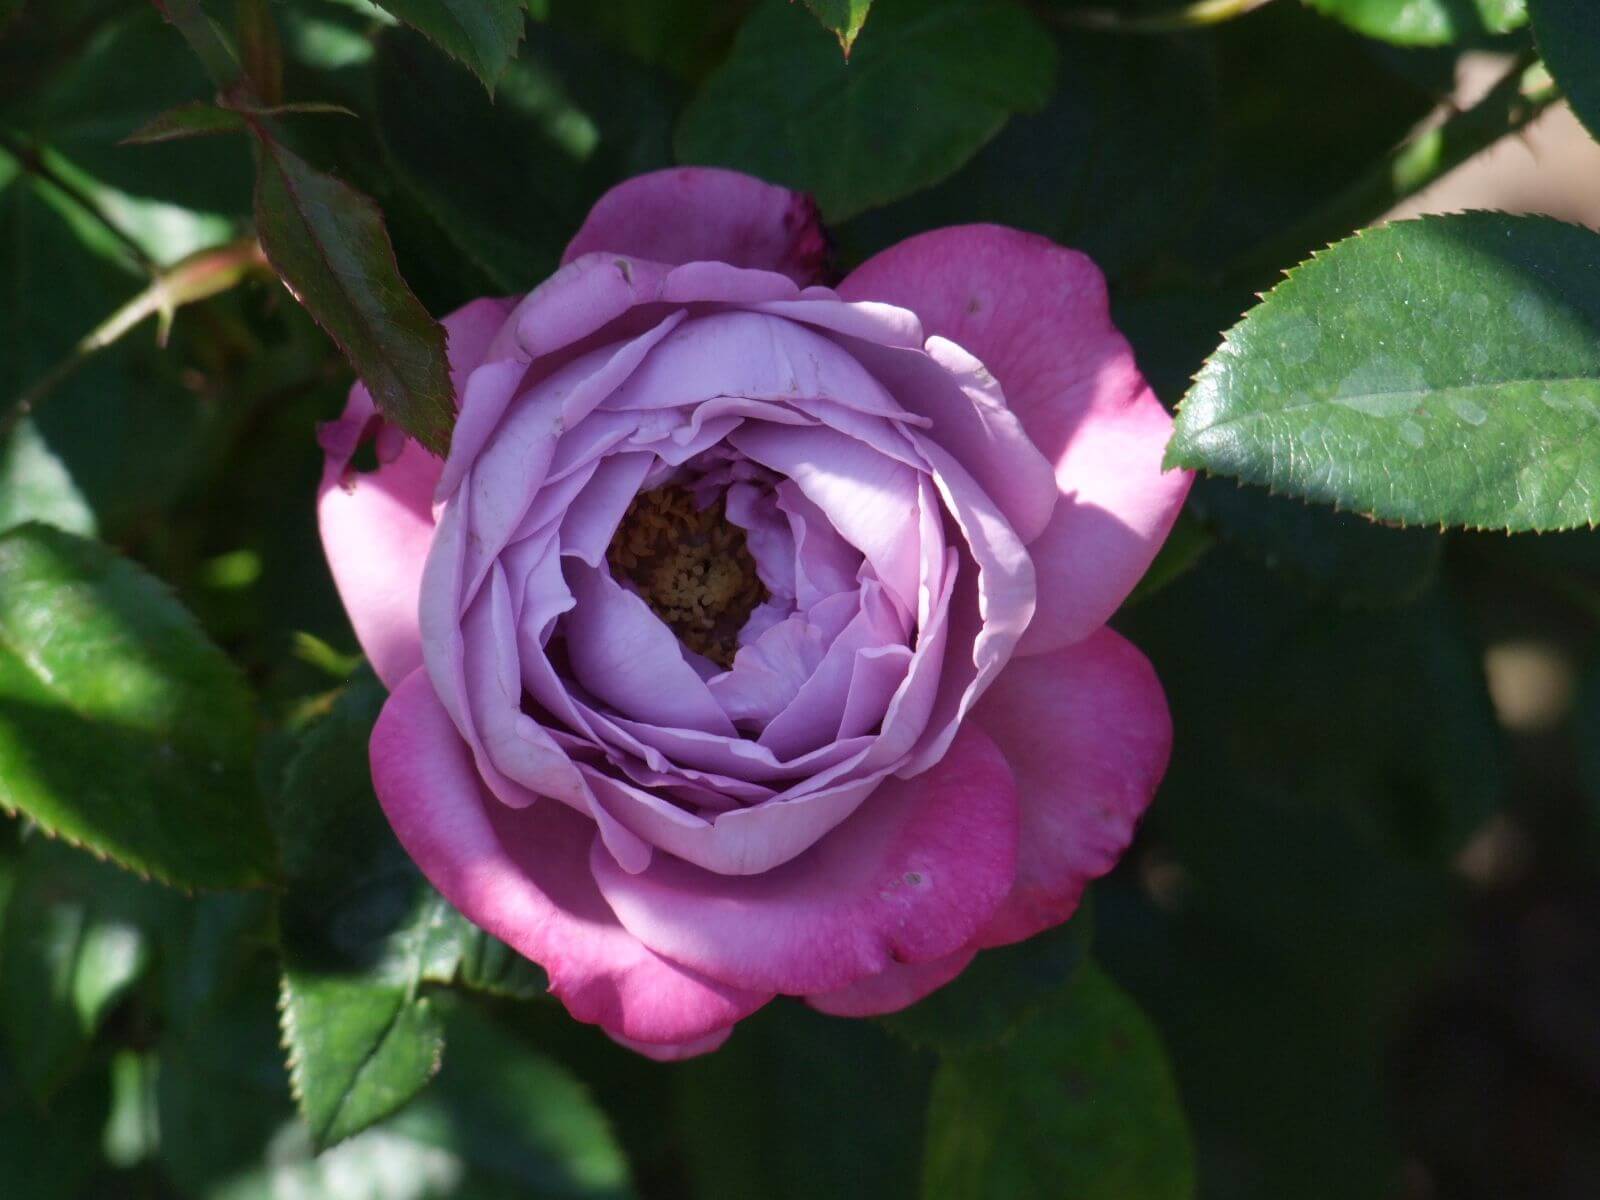 Основные сведения о розах флорибунда: посадка, правила ухода, размножение